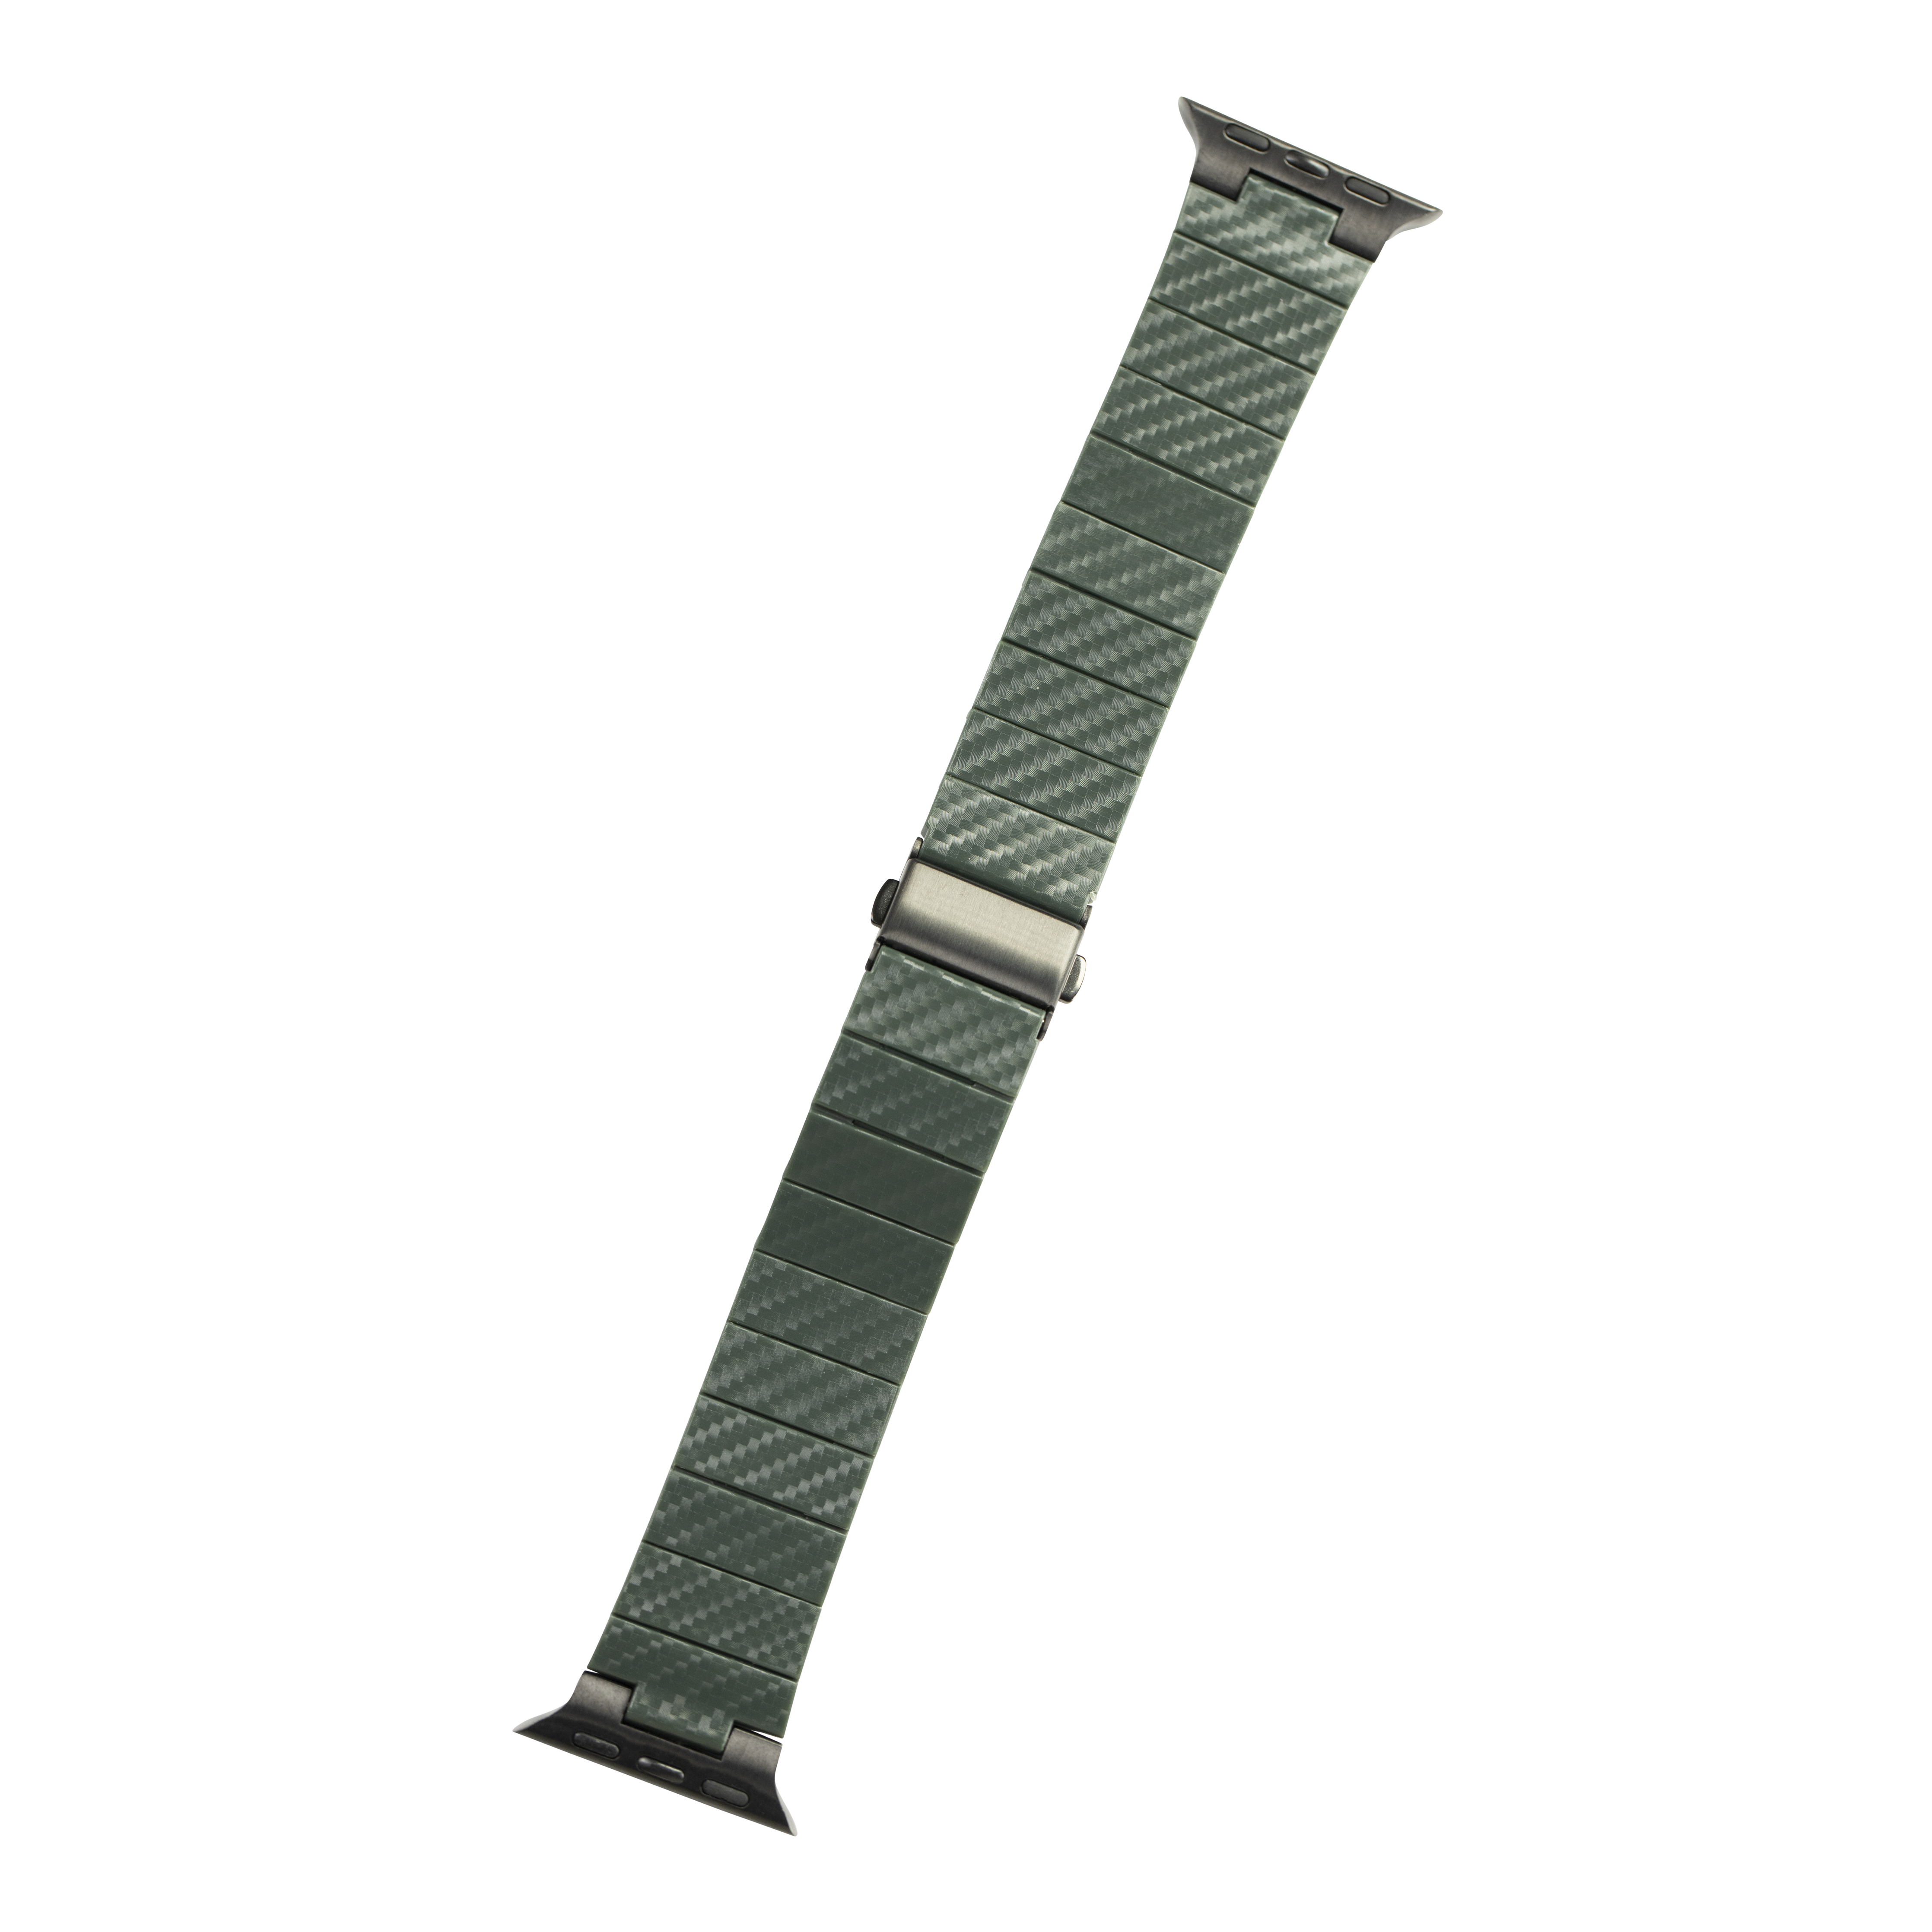 [Apple Watch] Carbon Fibre Bracelet - Green